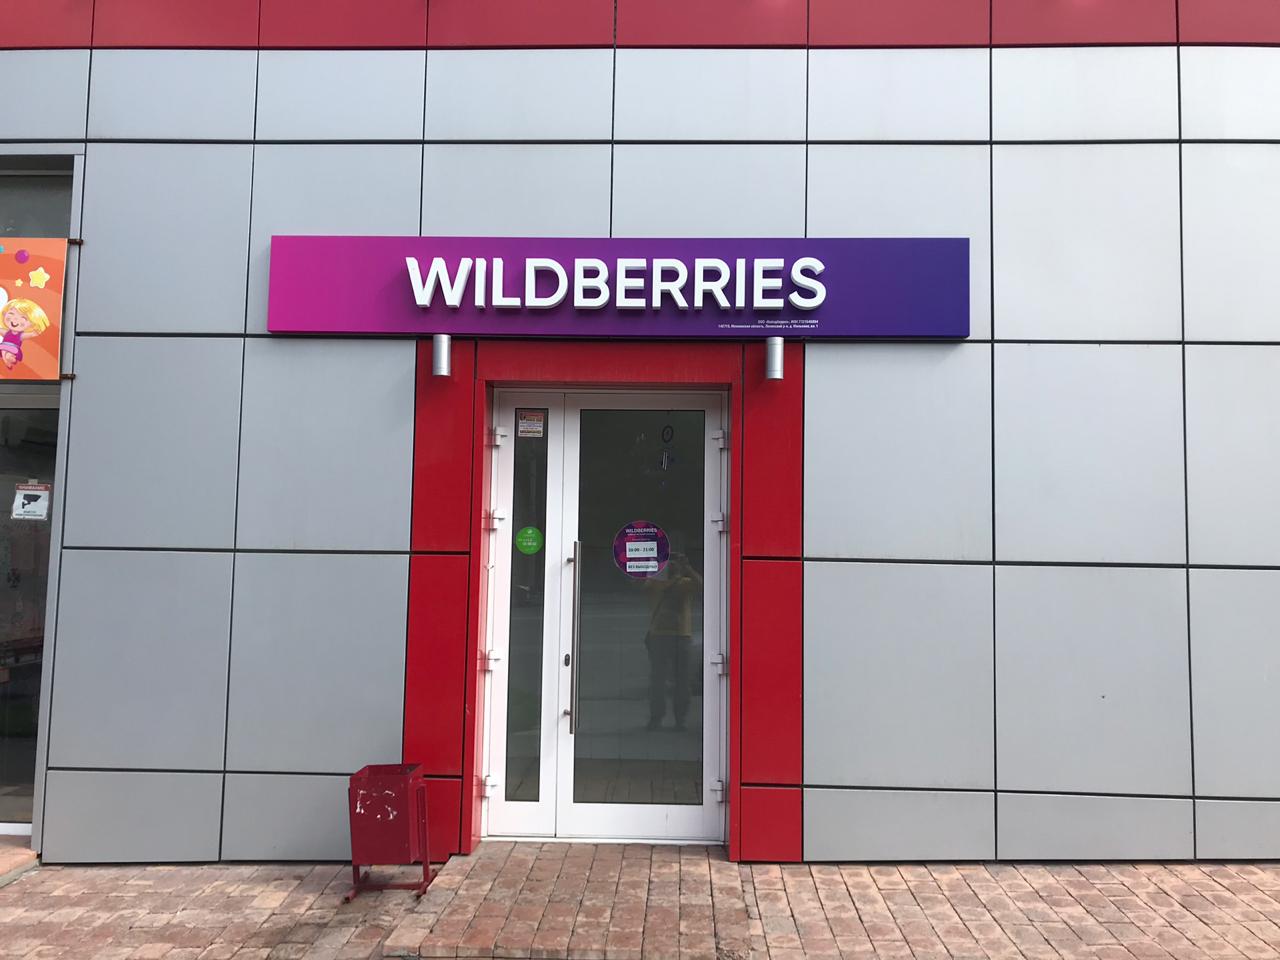 Валберис вывеска. Вывеска вайлдберриз. Вывеска ПВЗ Wildberries. Wildberries вывеска на здании. Вывеска Wildberries новая.